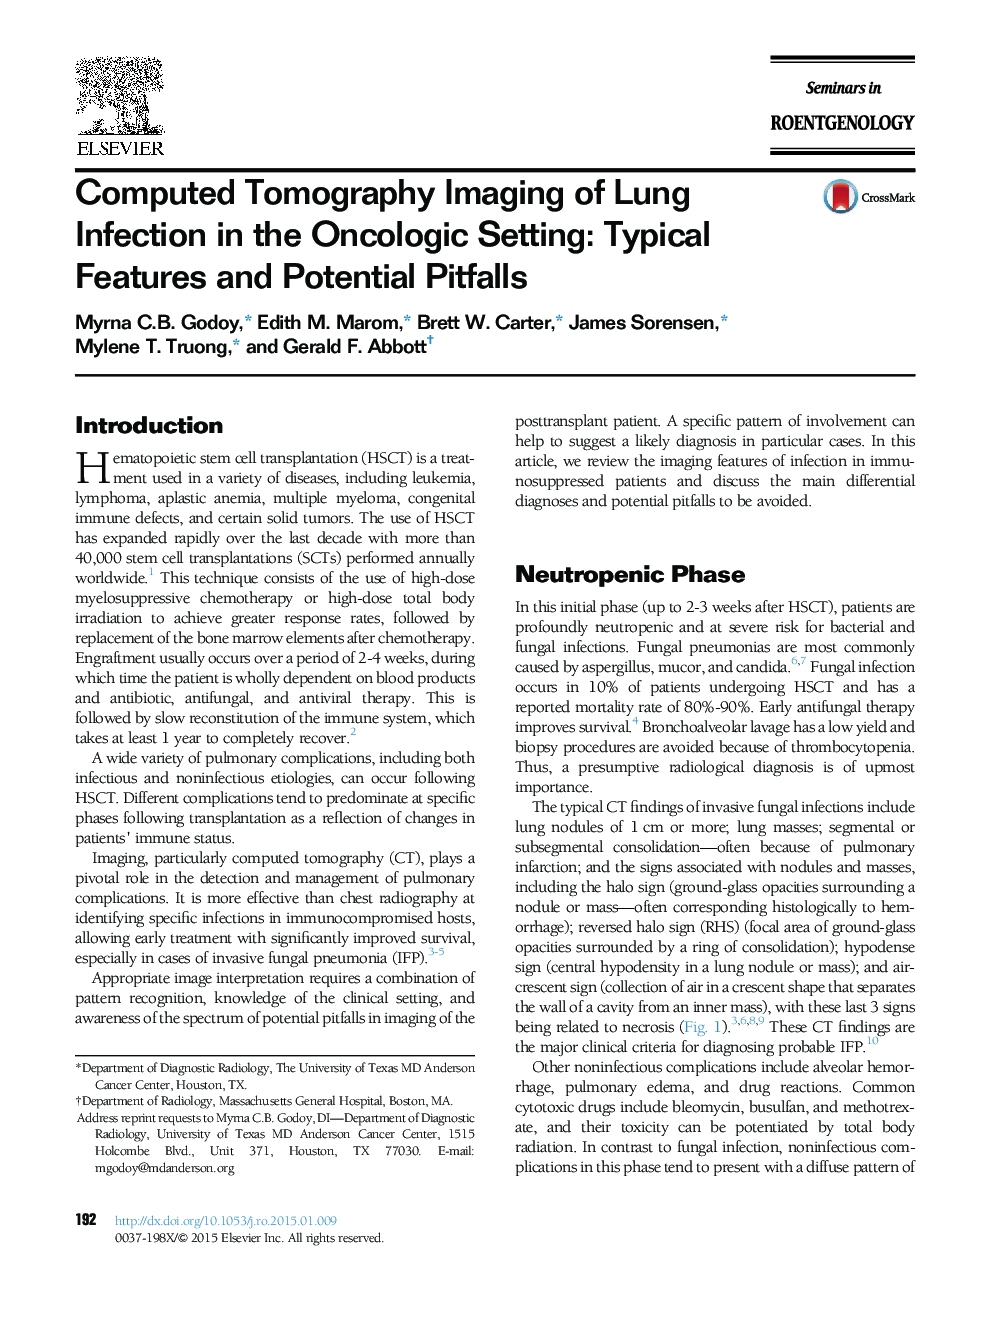 تصویربرداری از توموگرافی کامپیوتری از عفونت ریه در تنظیم انکولوژیک: ویژگی های معمول و مشکلات احتمالی 